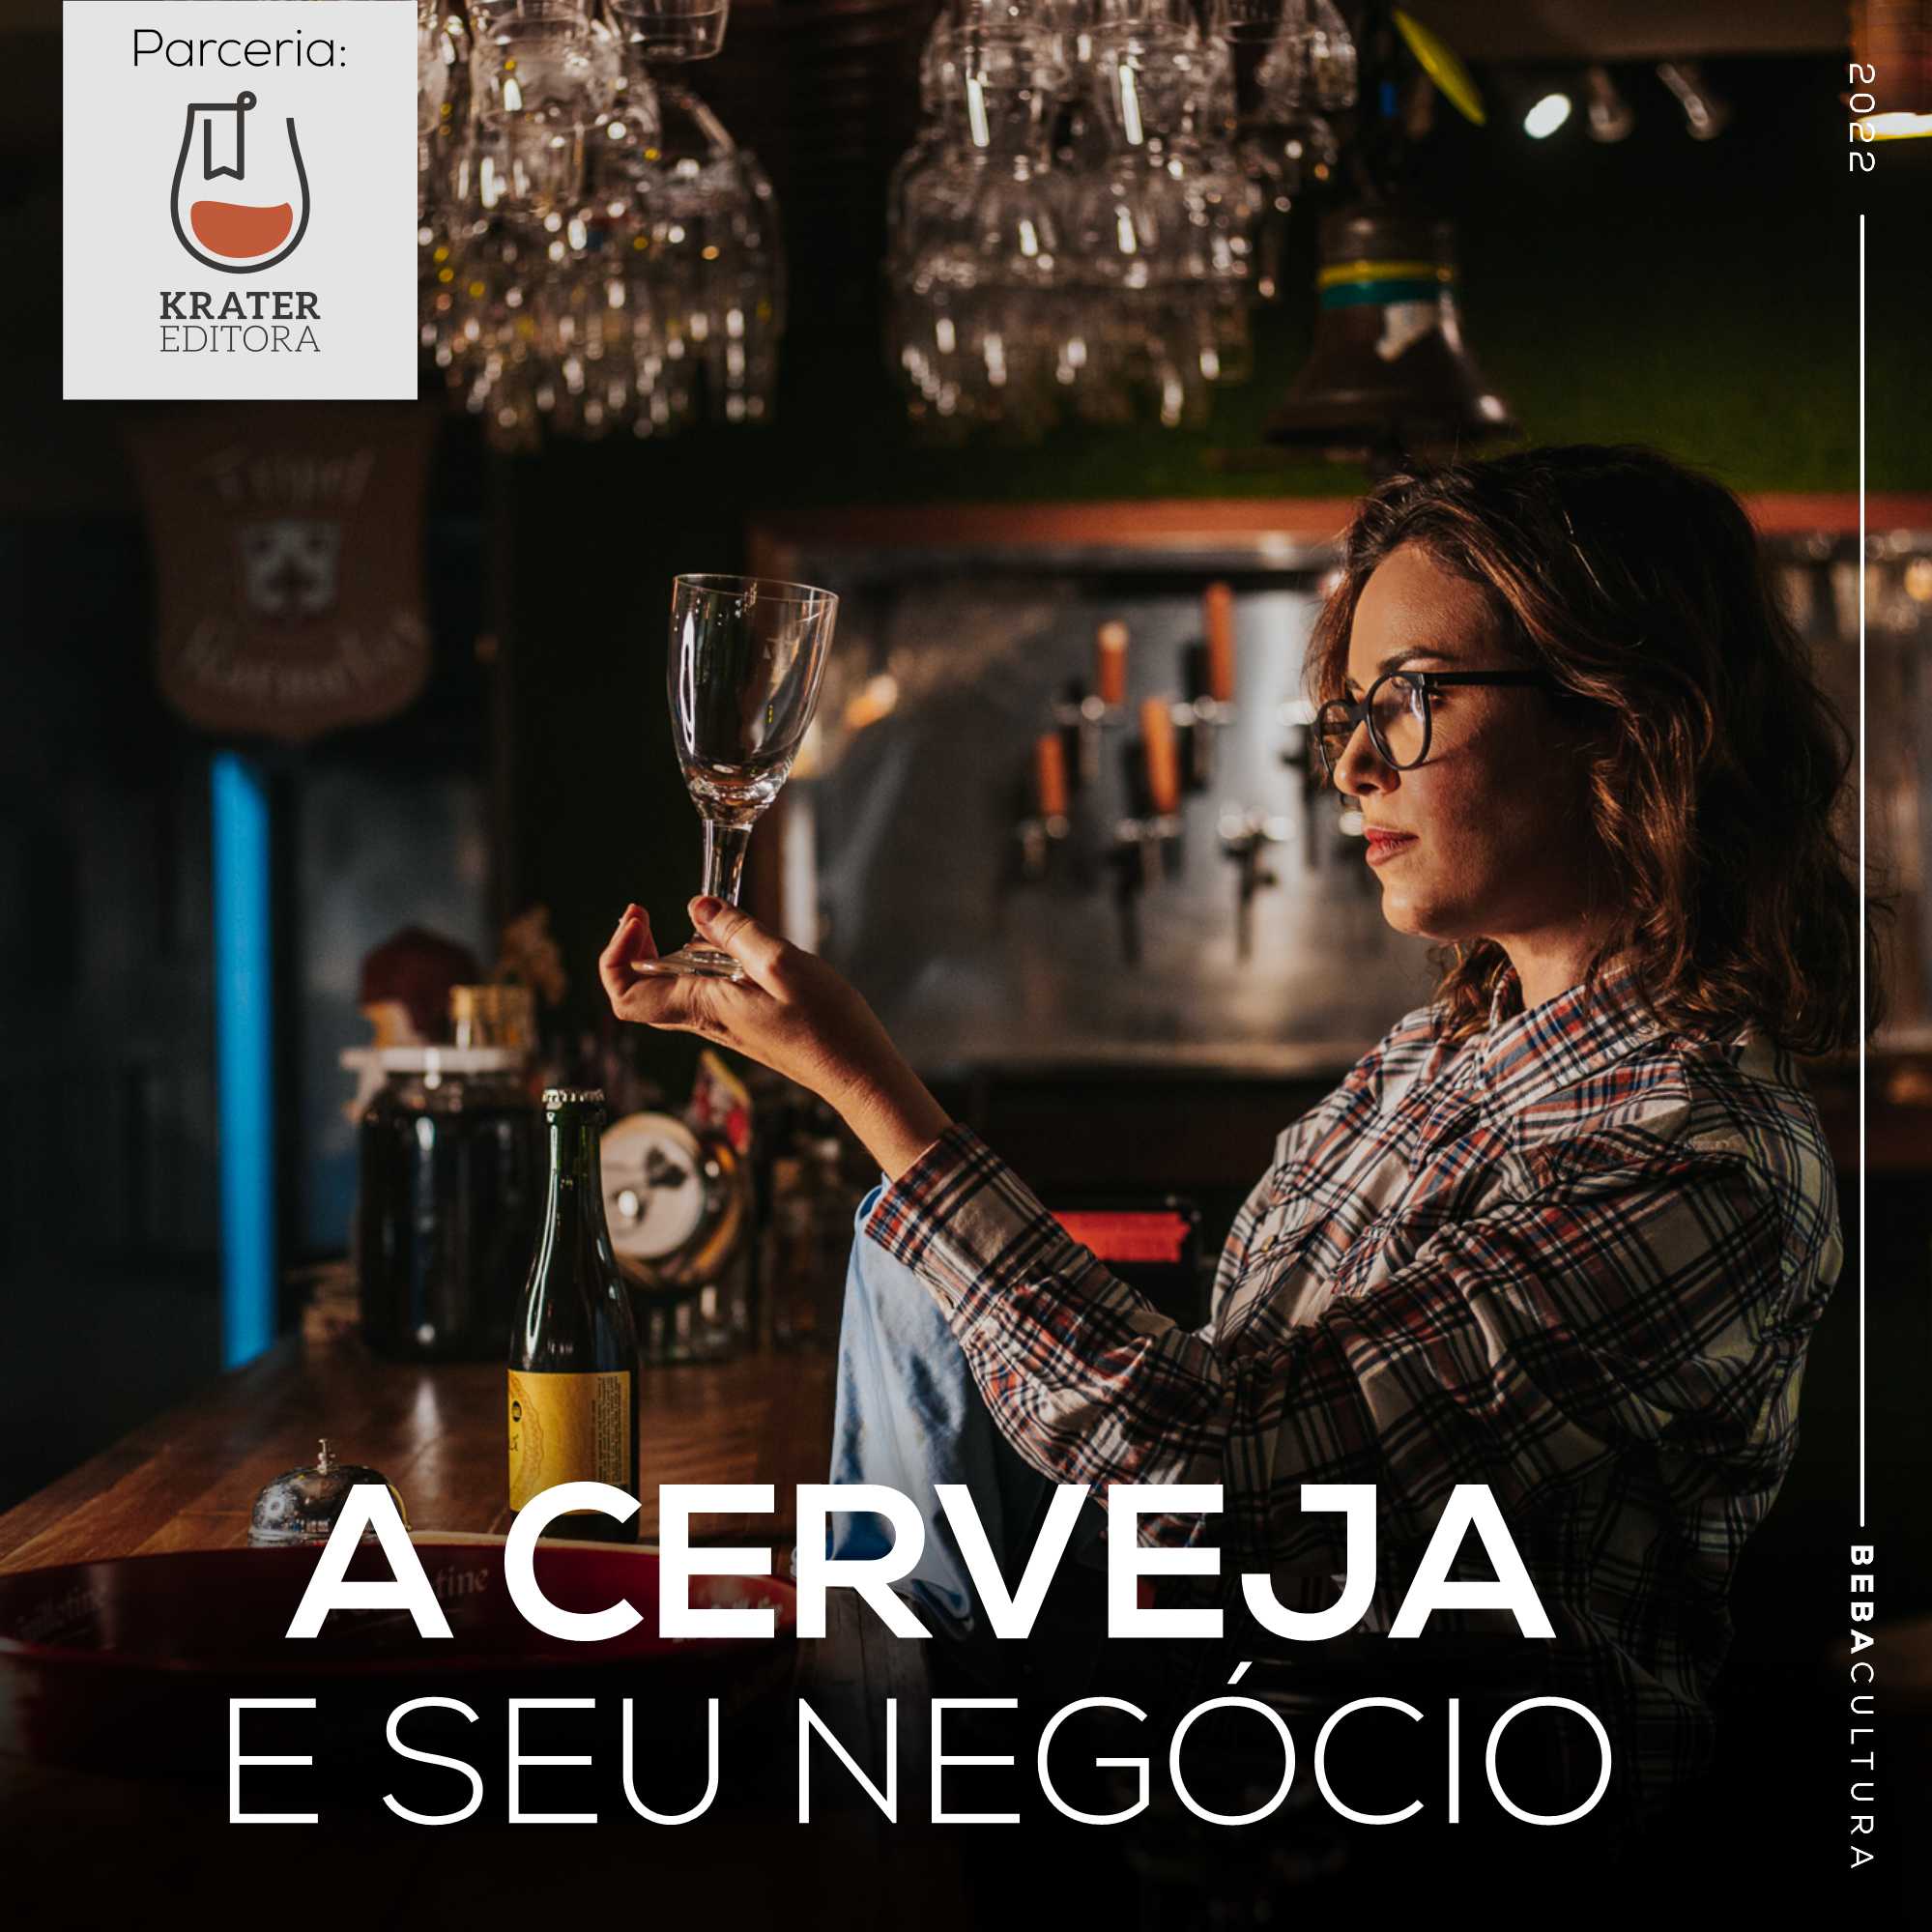 Ingresso - A Cerveja e seu negócio com Bia Amorim